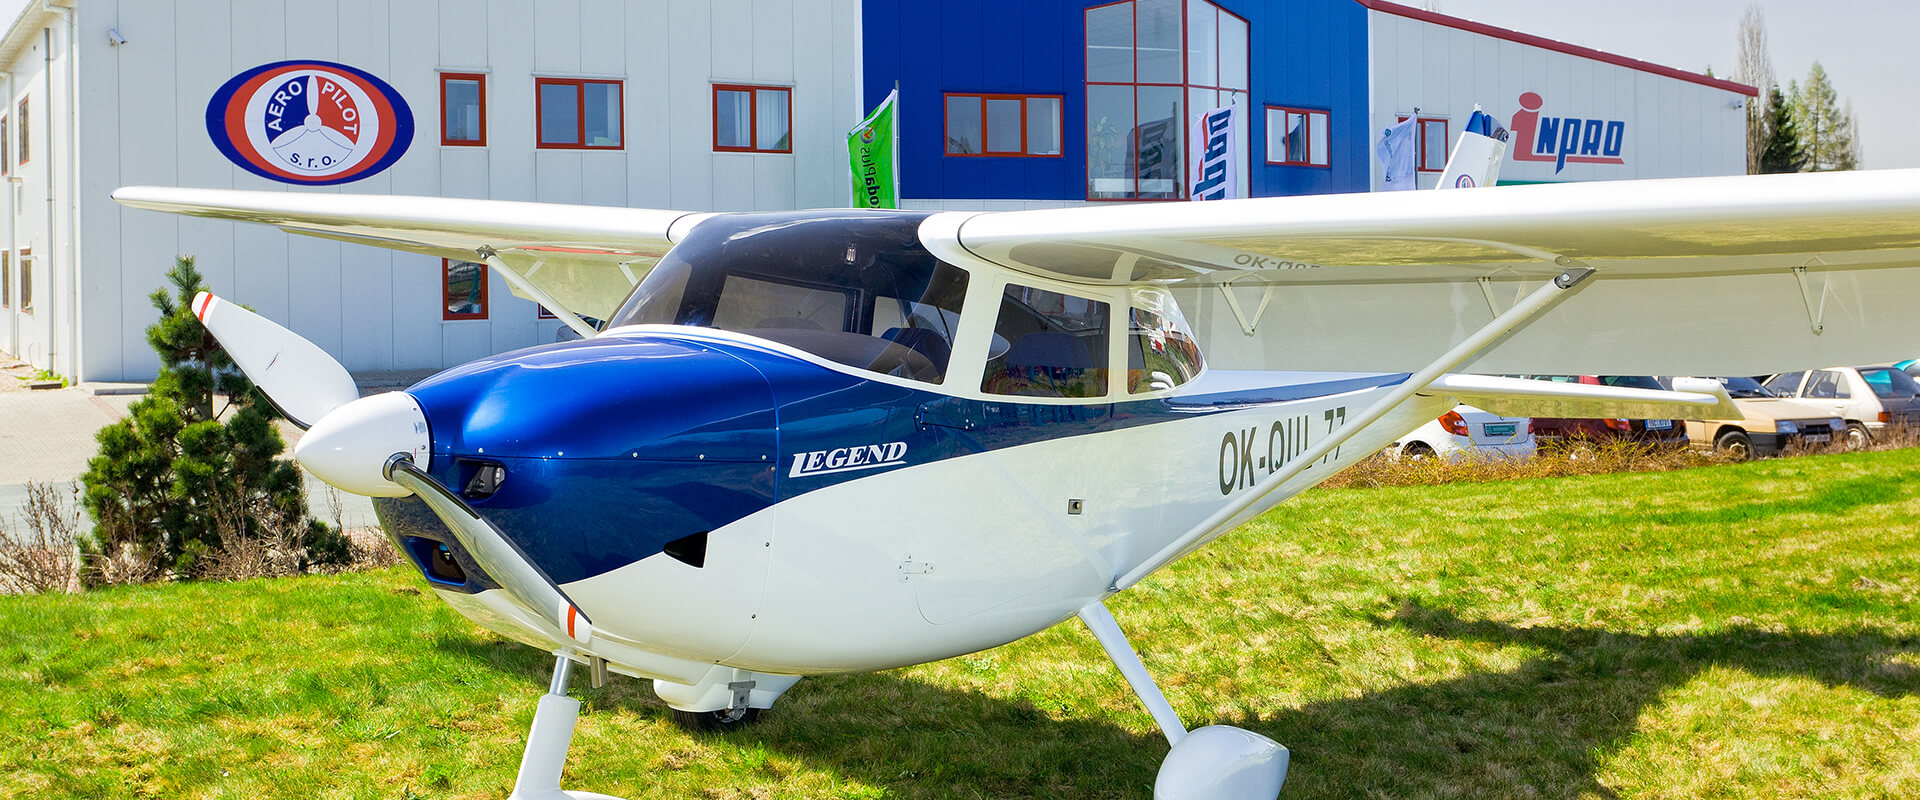 Aeropilot s.r.o. - výroba ultralehkých a lehkých sportovních letadel